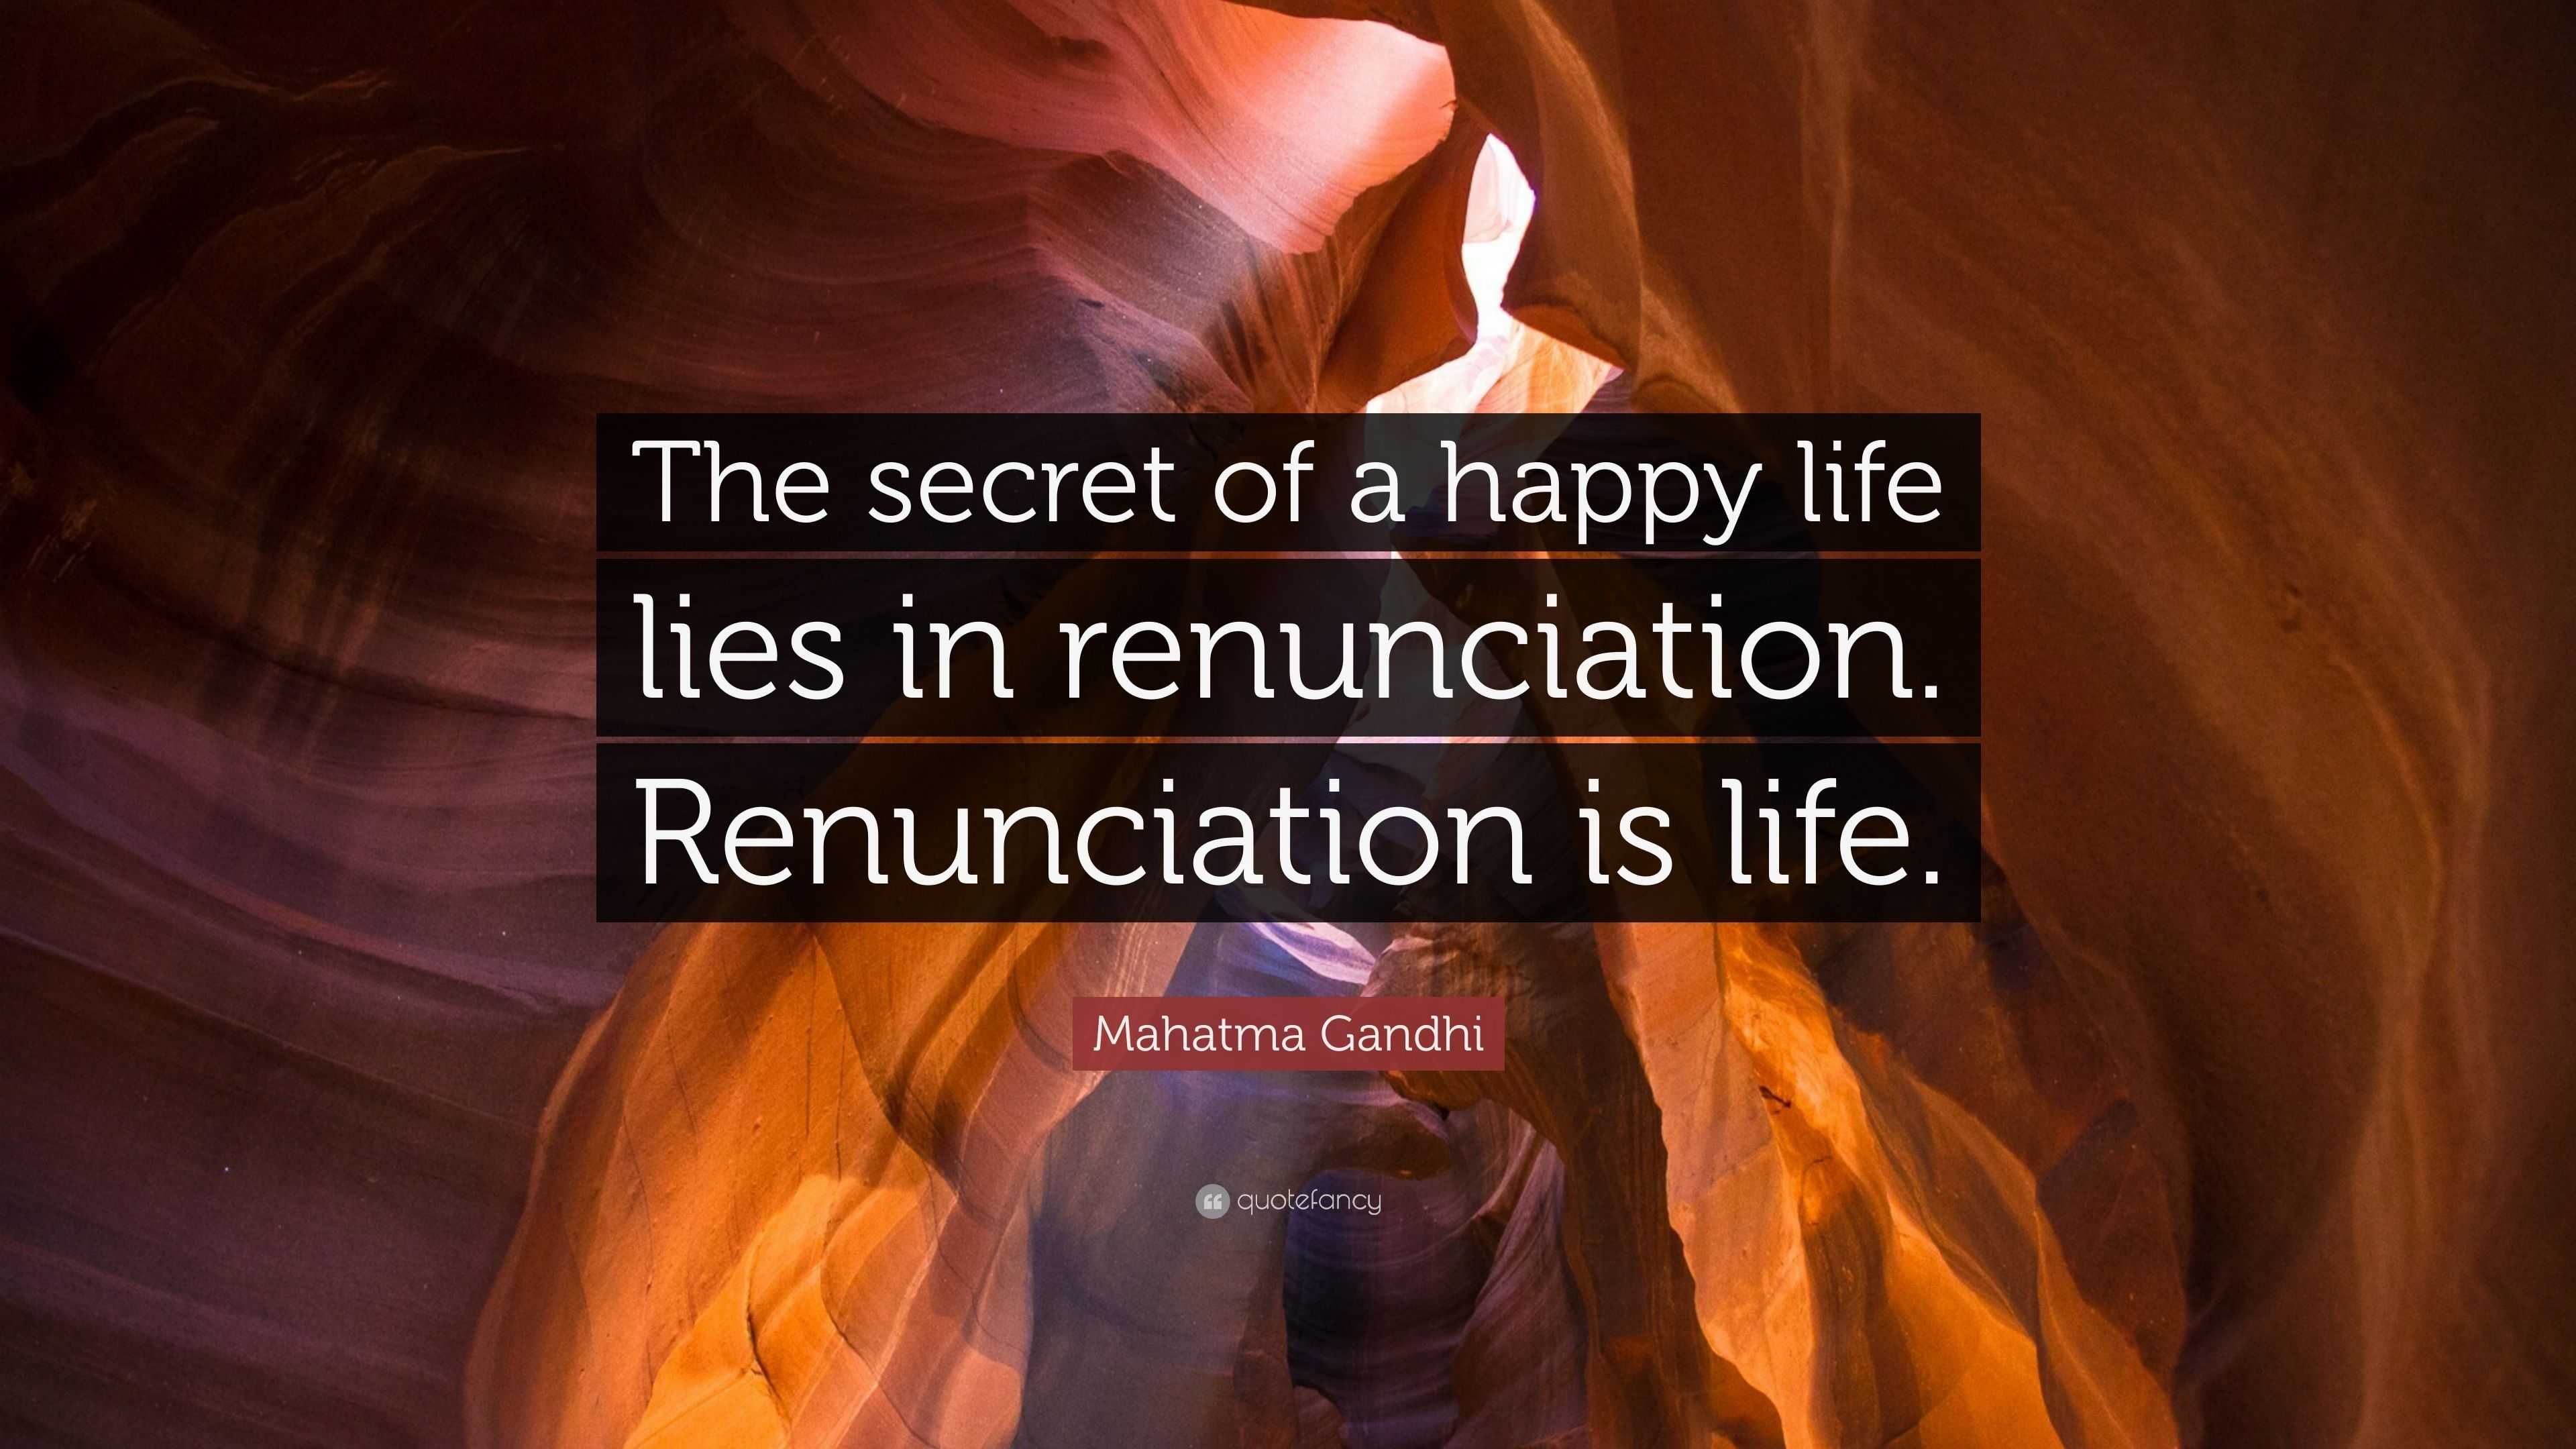 Mahatma Gandhi Quote “The secret of a happy life lies in renunciation Renunciation